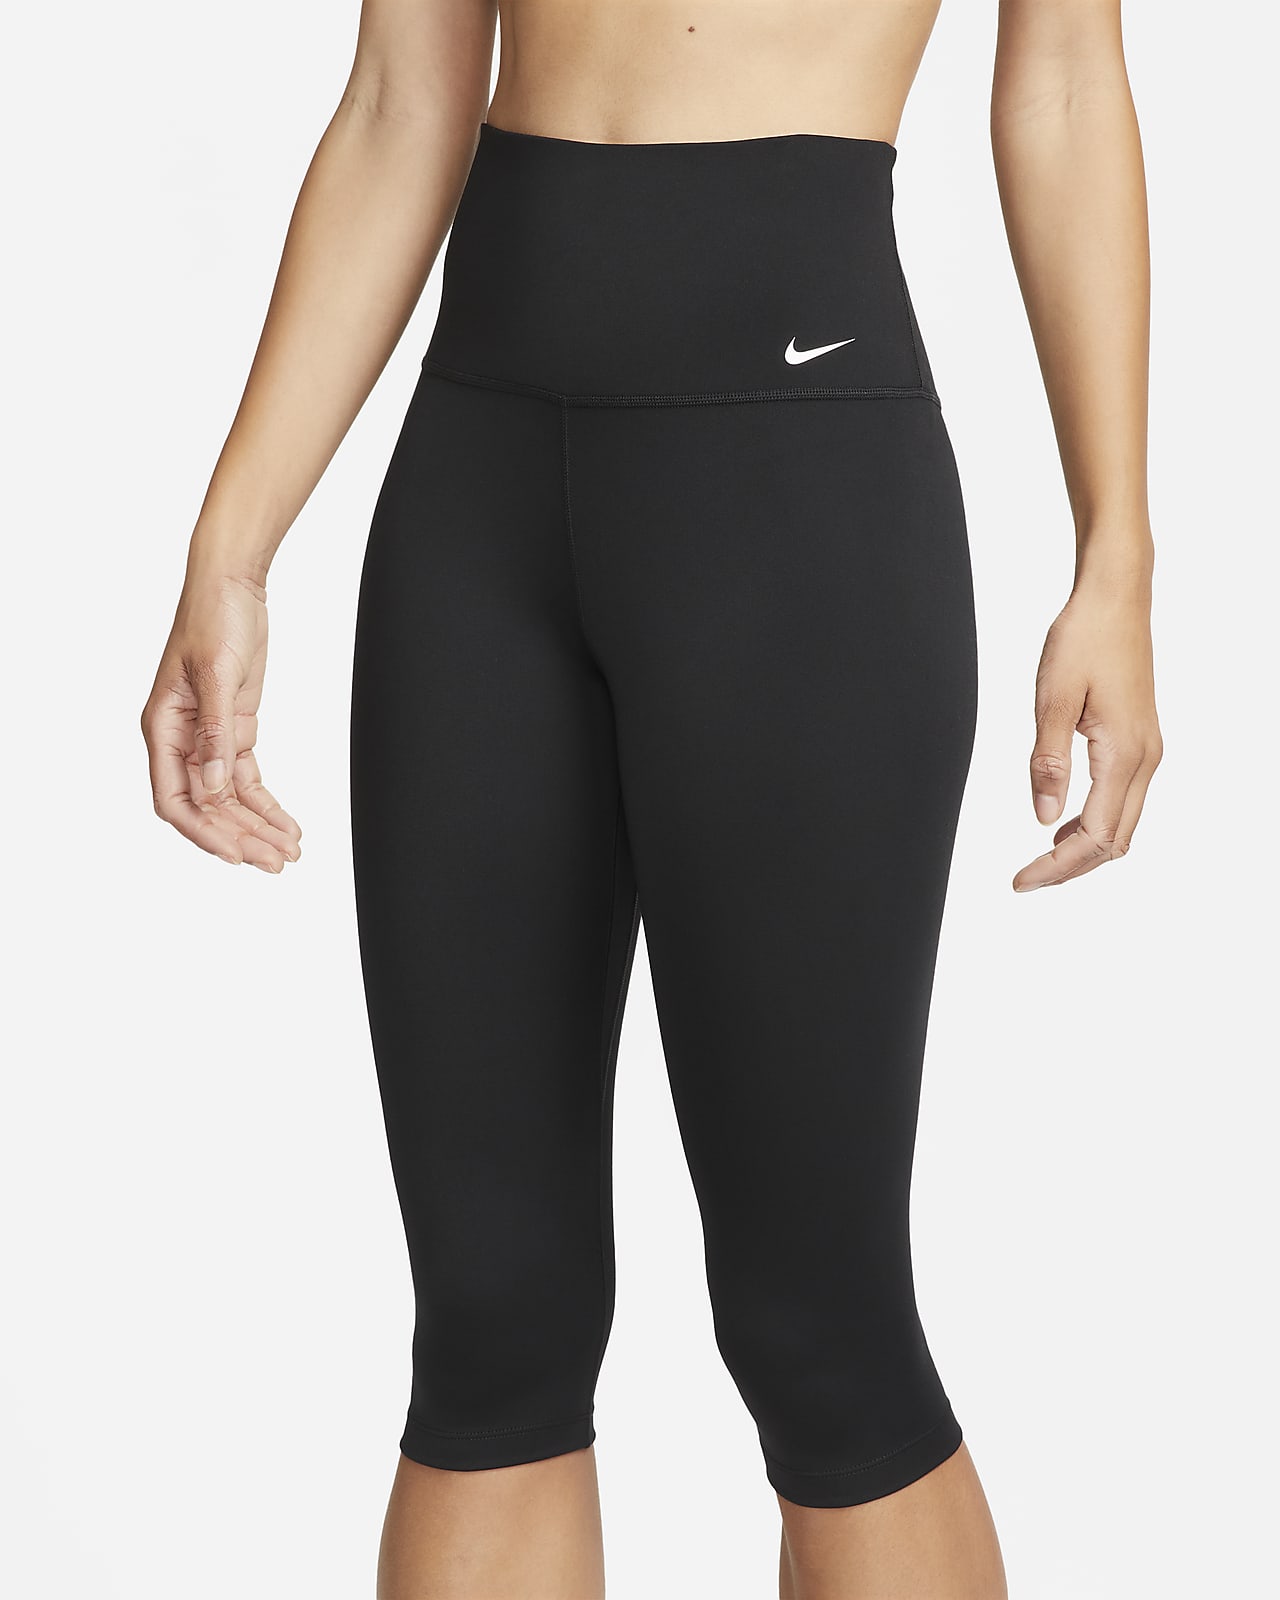 Nike One Women's High-Waisted Capri Leggings. Nike ZA